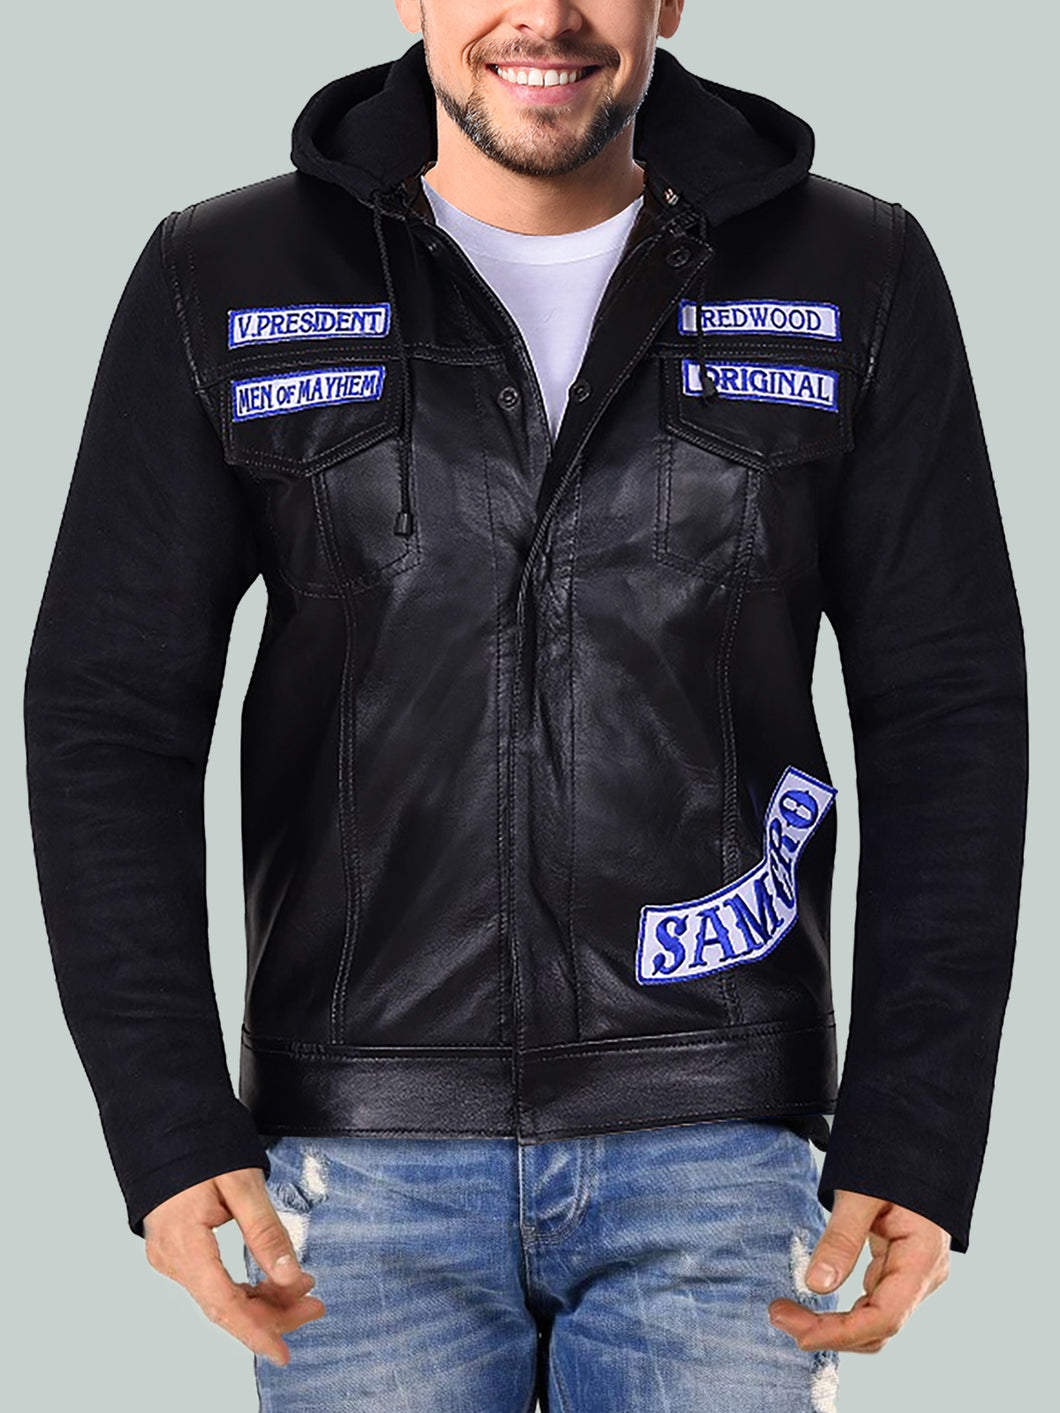 Men's Feisty Black Leather Hoodie Splendid Jacket